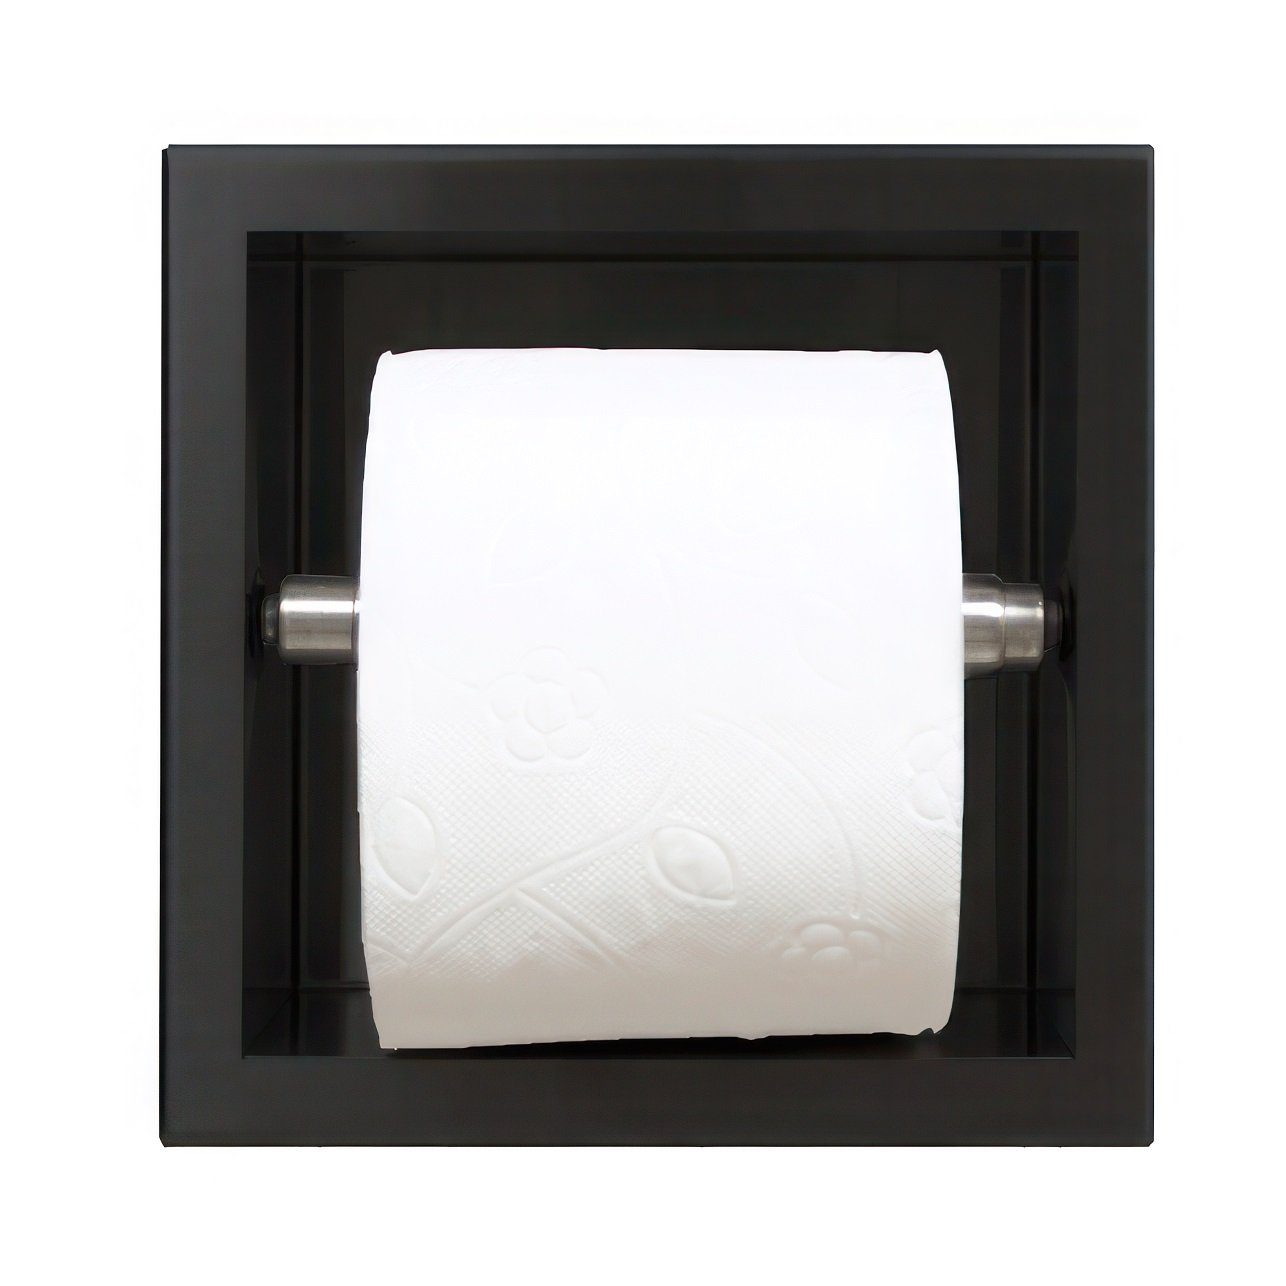 KOLMAN Toilettenpapierhalter WALL BOX PAPER 1 Unterputz Wandnische Toilettenpapierhalter in Schwarz